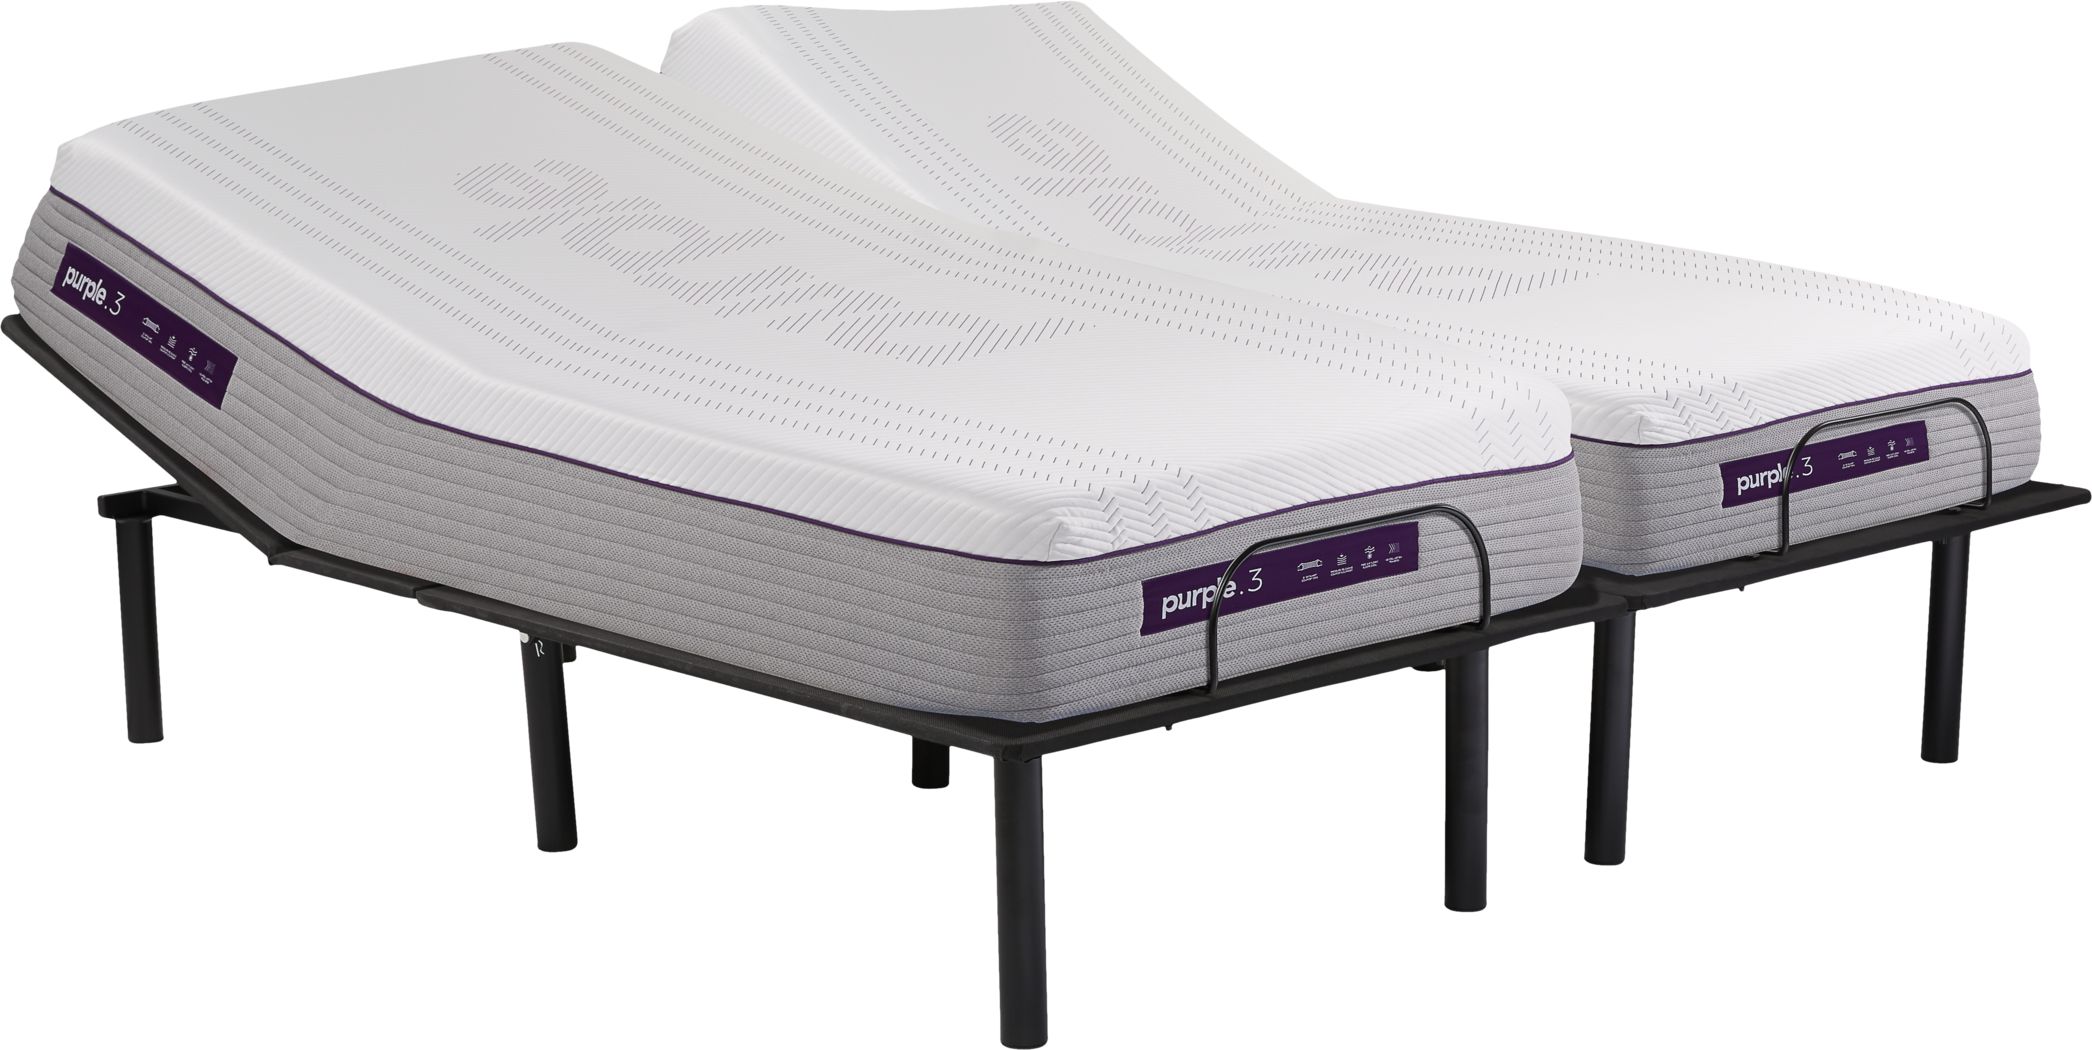 purple 3 king mattress